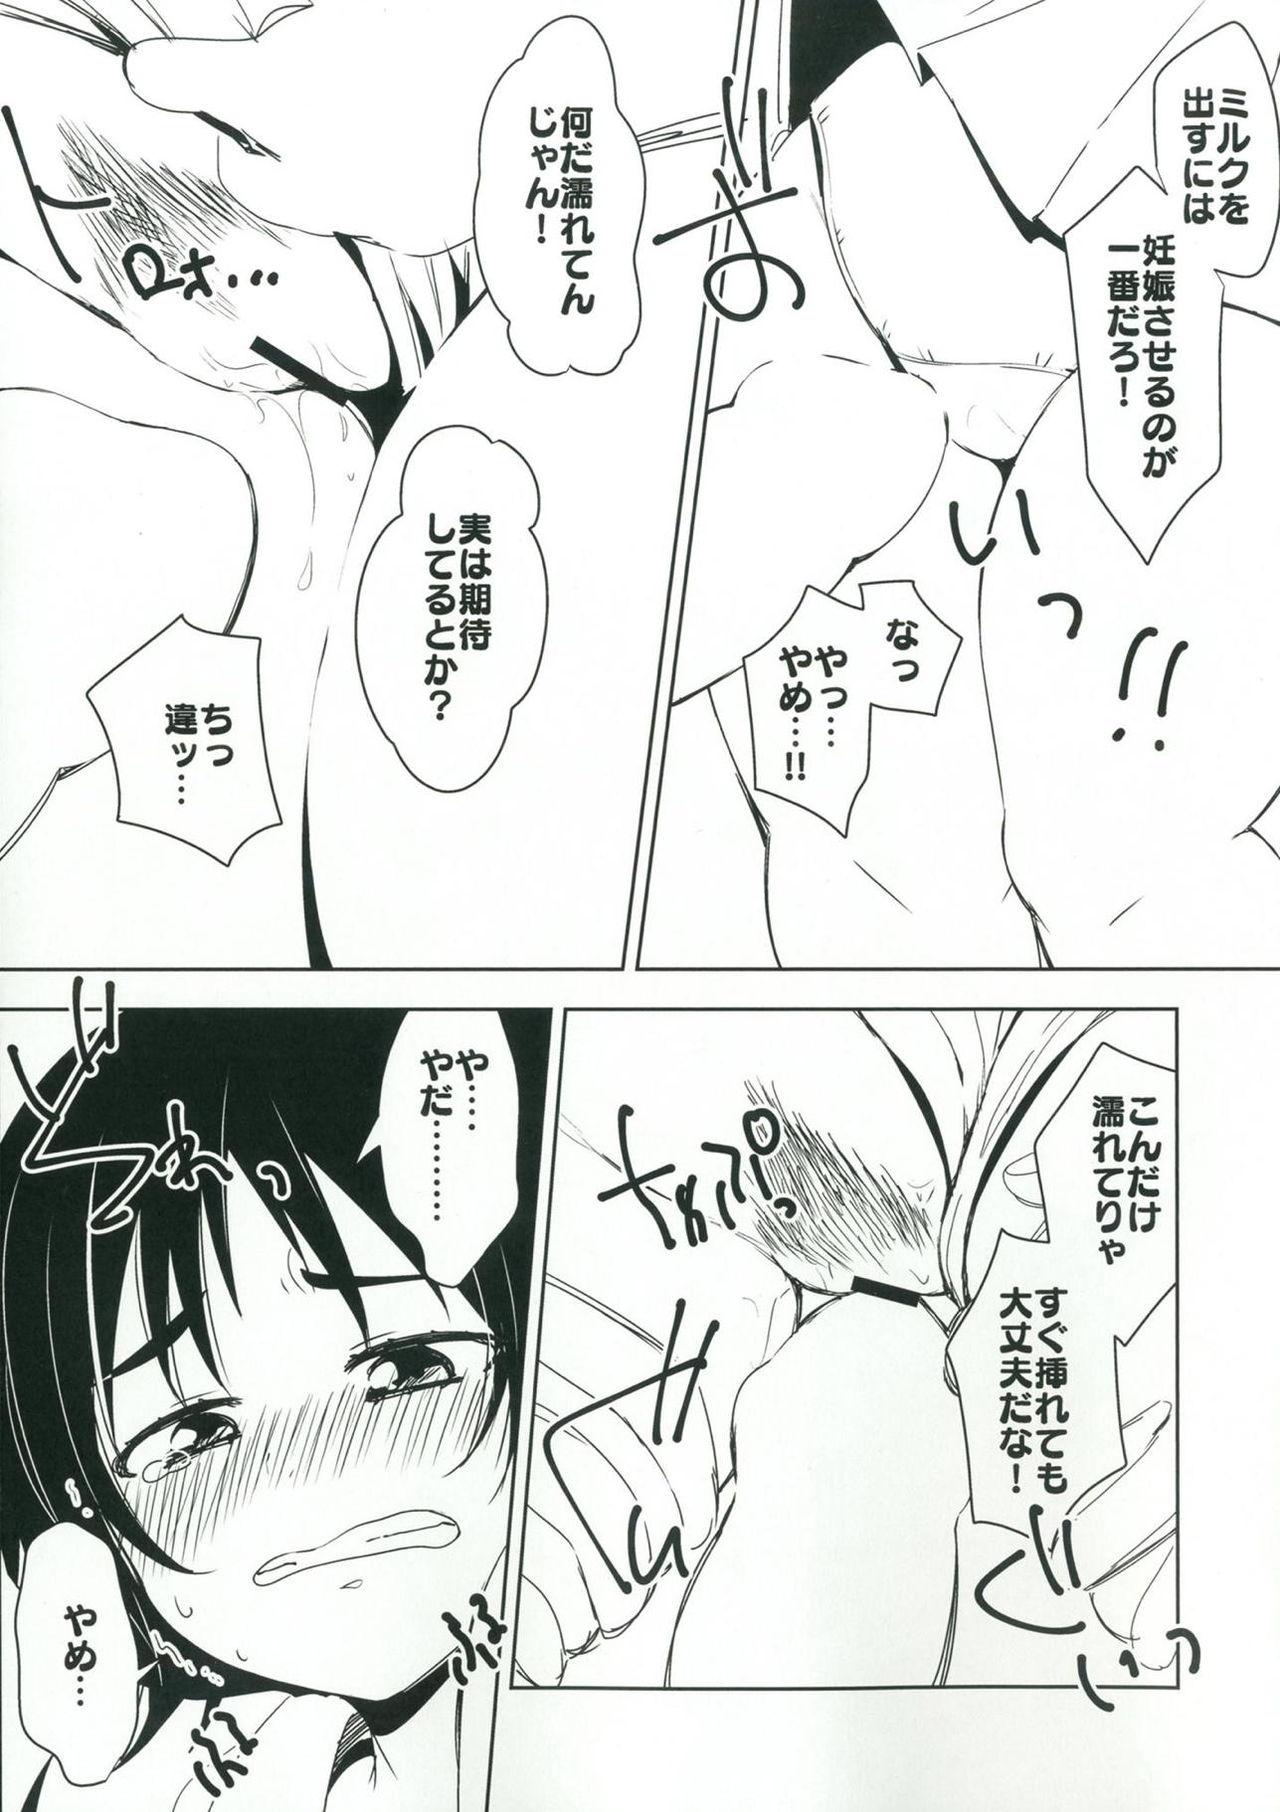 Butt Sex (Panzer Vor! 15) [Chabane Ninja (Happamushi)] Onii-san-tachi wa Koko de Murakami no Oppai demo Nondenasai yo (Girls und Panzer) - Girls und panzer Cumming - Page 8